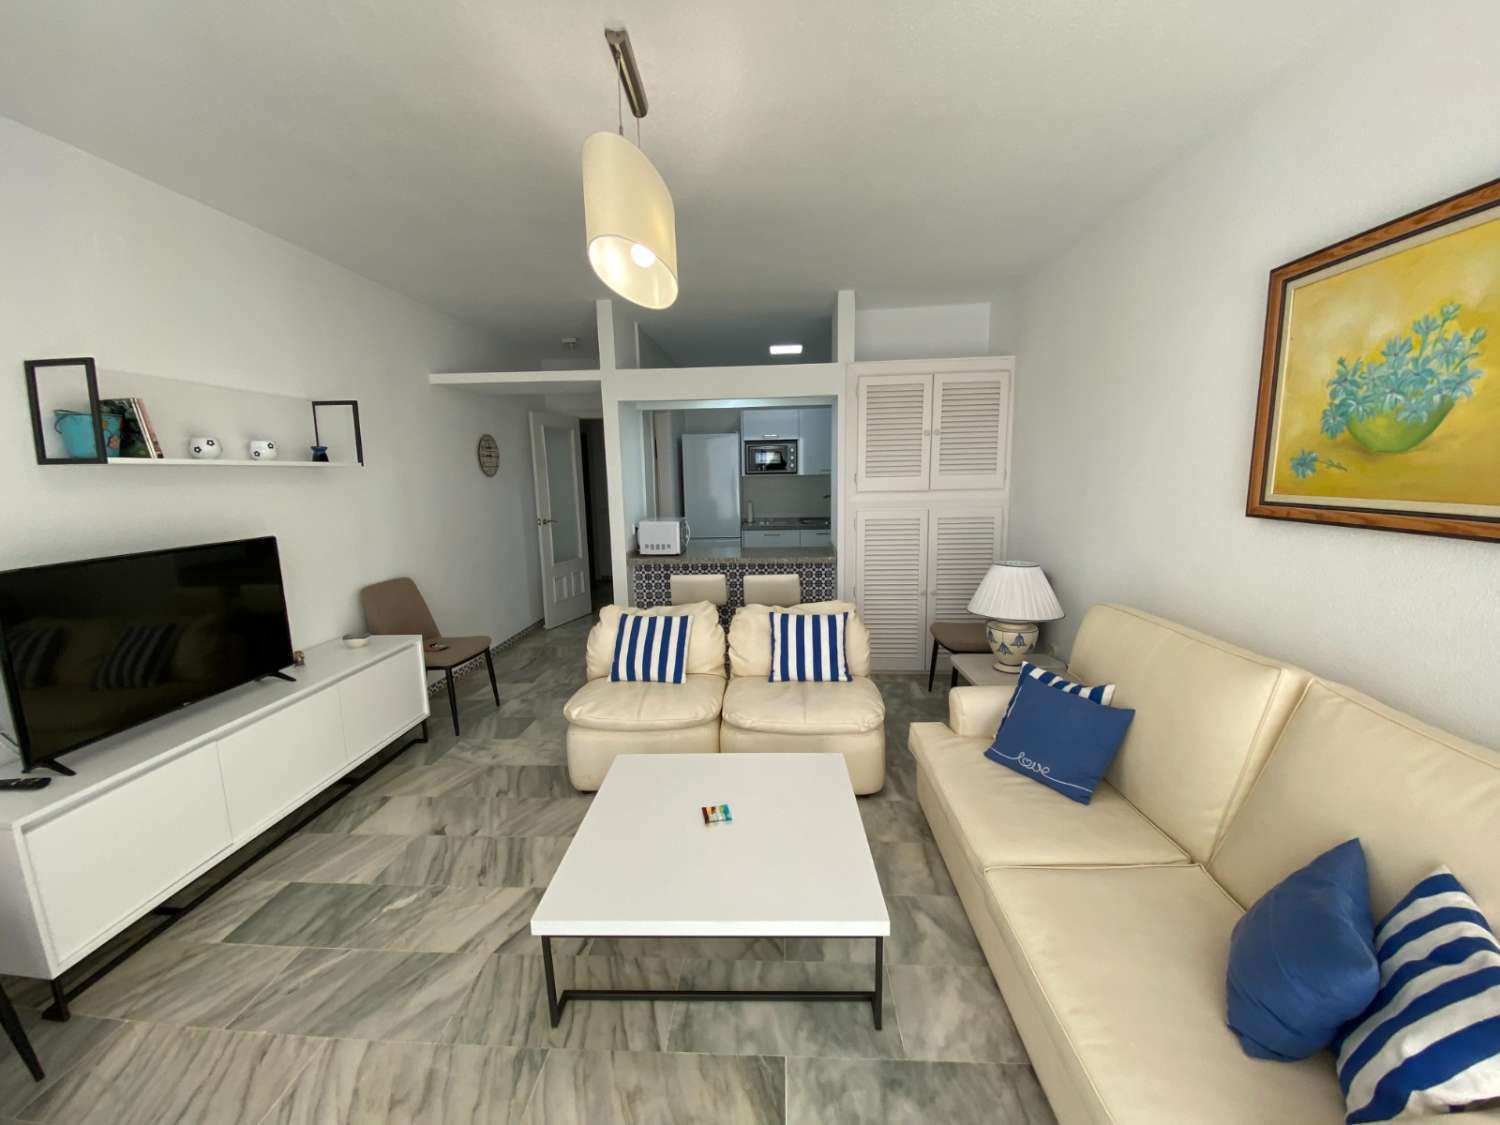 Grand appartement de 3 chambres sur la plage de Fuengirola, piscine, climatisation, wi-fi